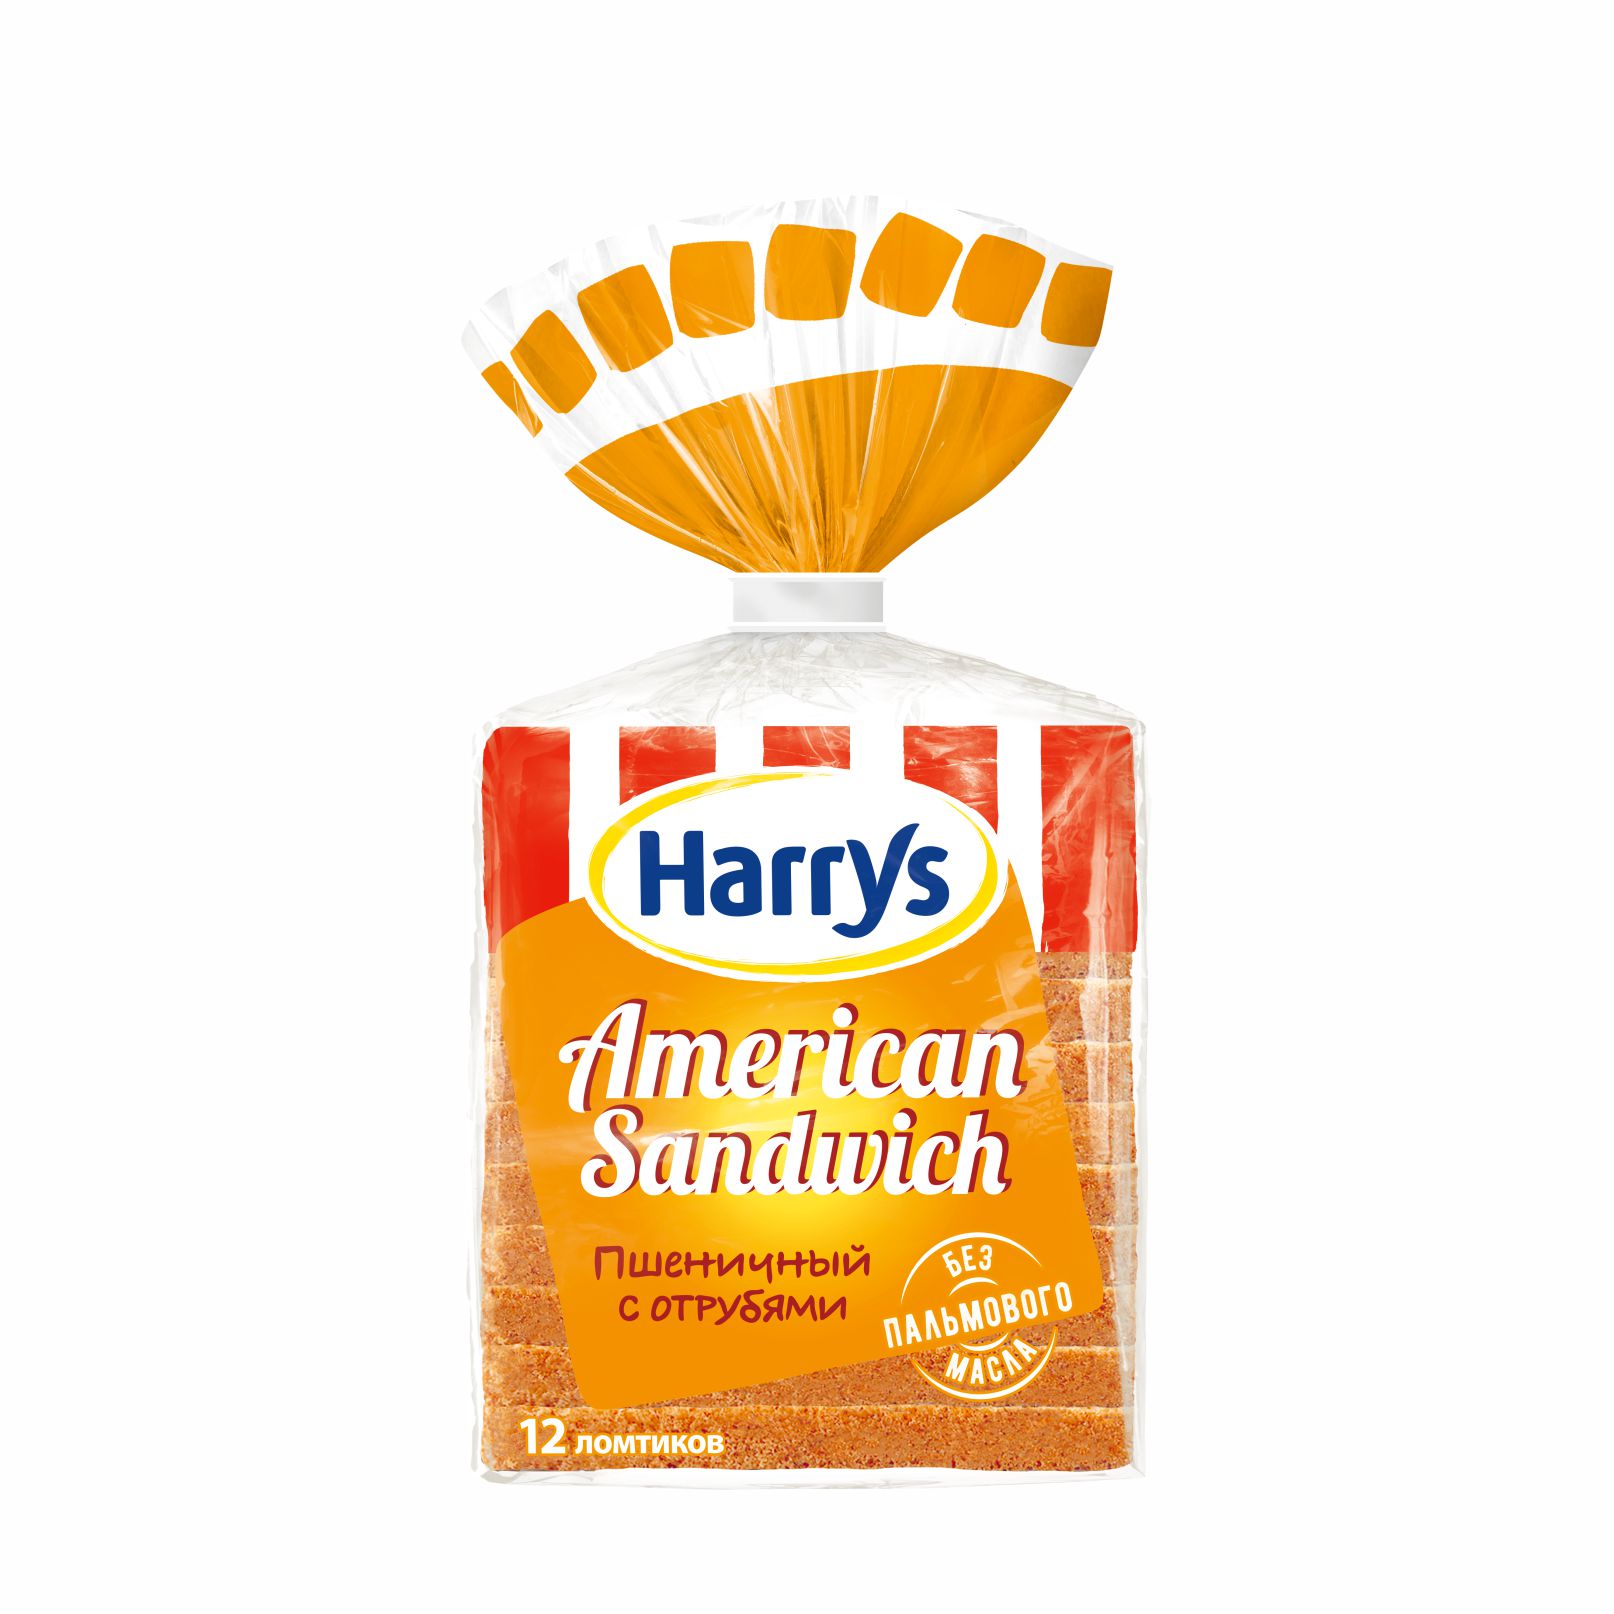 Хлеб с отрубями Harrys American Sandwich 515 г хлеб пшеничный сандвичный harry s american sandwich 470 г